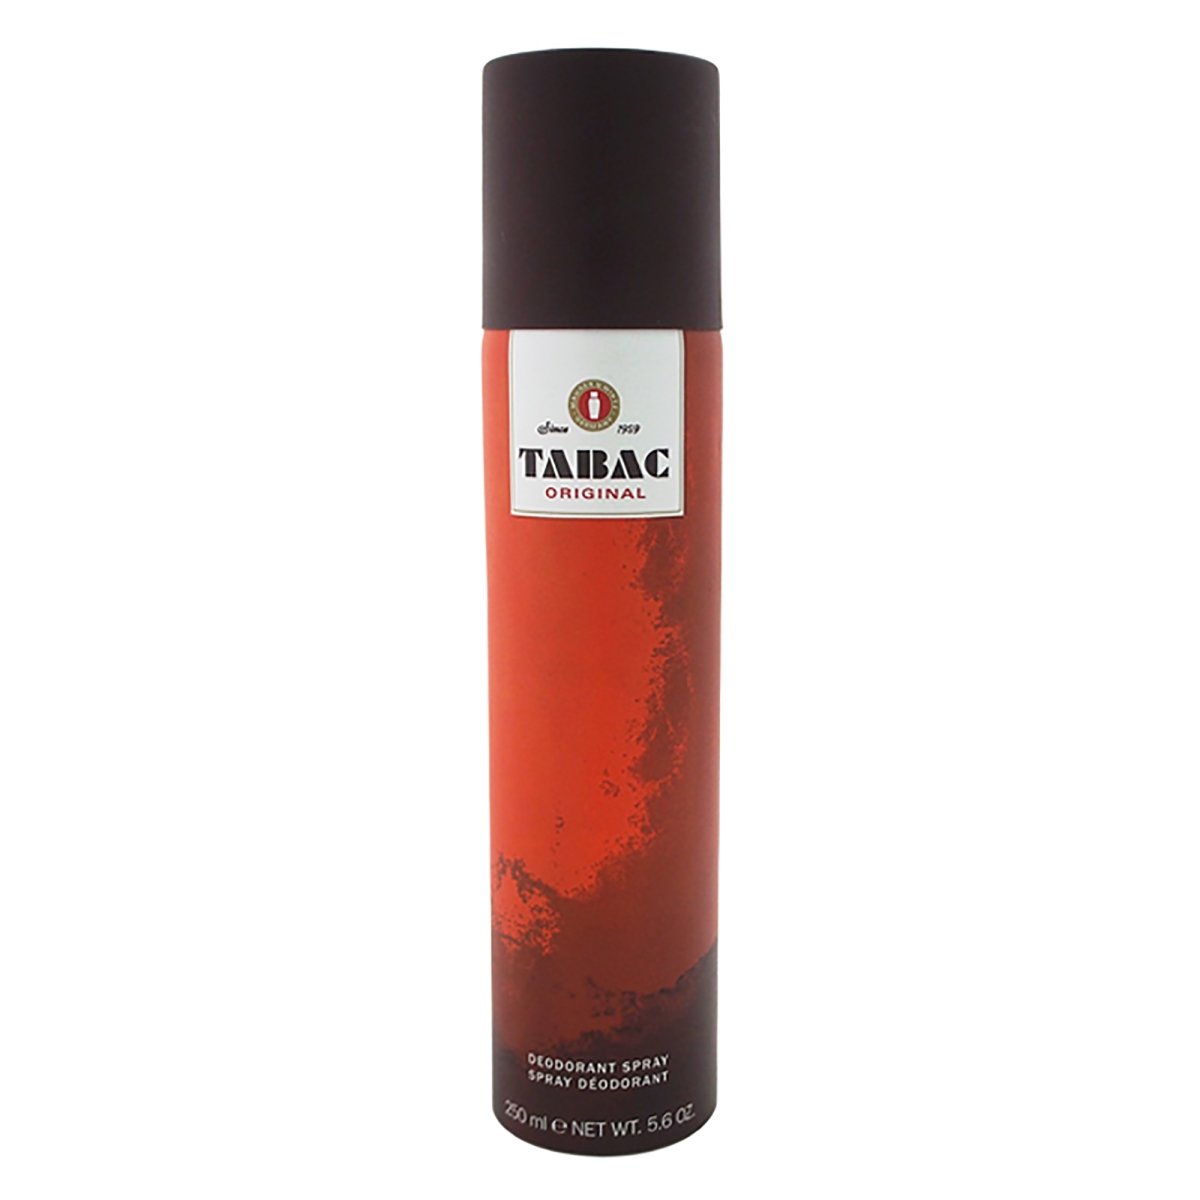 M-bb-2801 5.6 Oz Tabac Original Deodorant Spray For Men